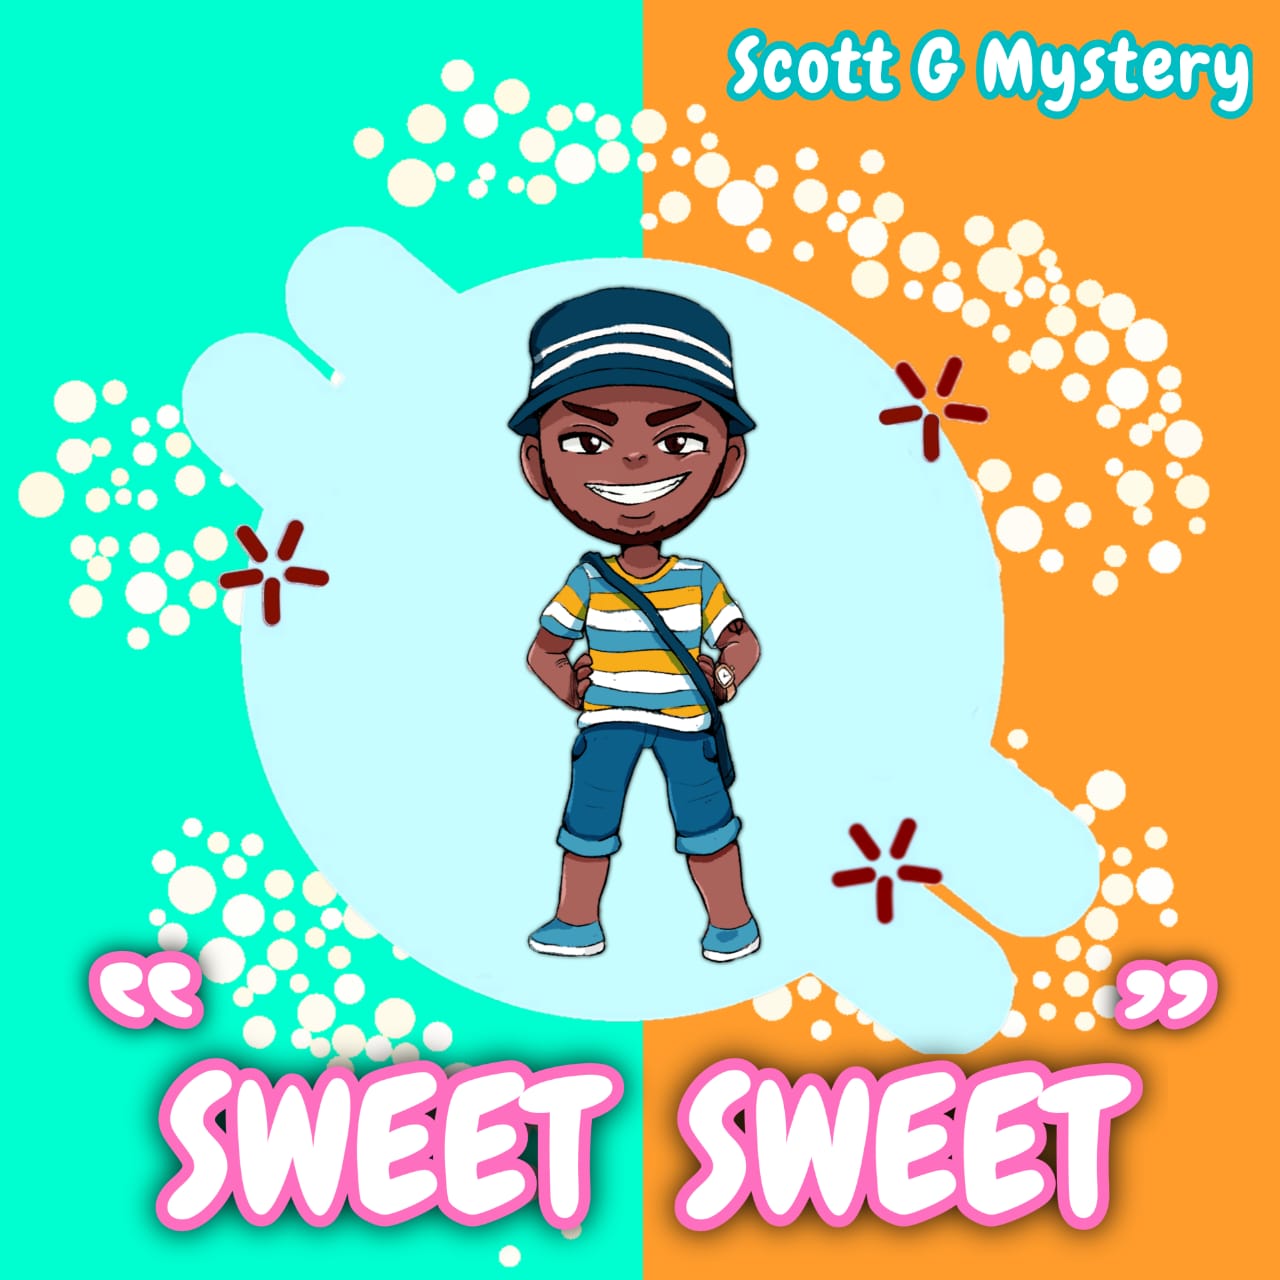 Scott G Mystery - Sweet Sweet |Djbollombolo.com|